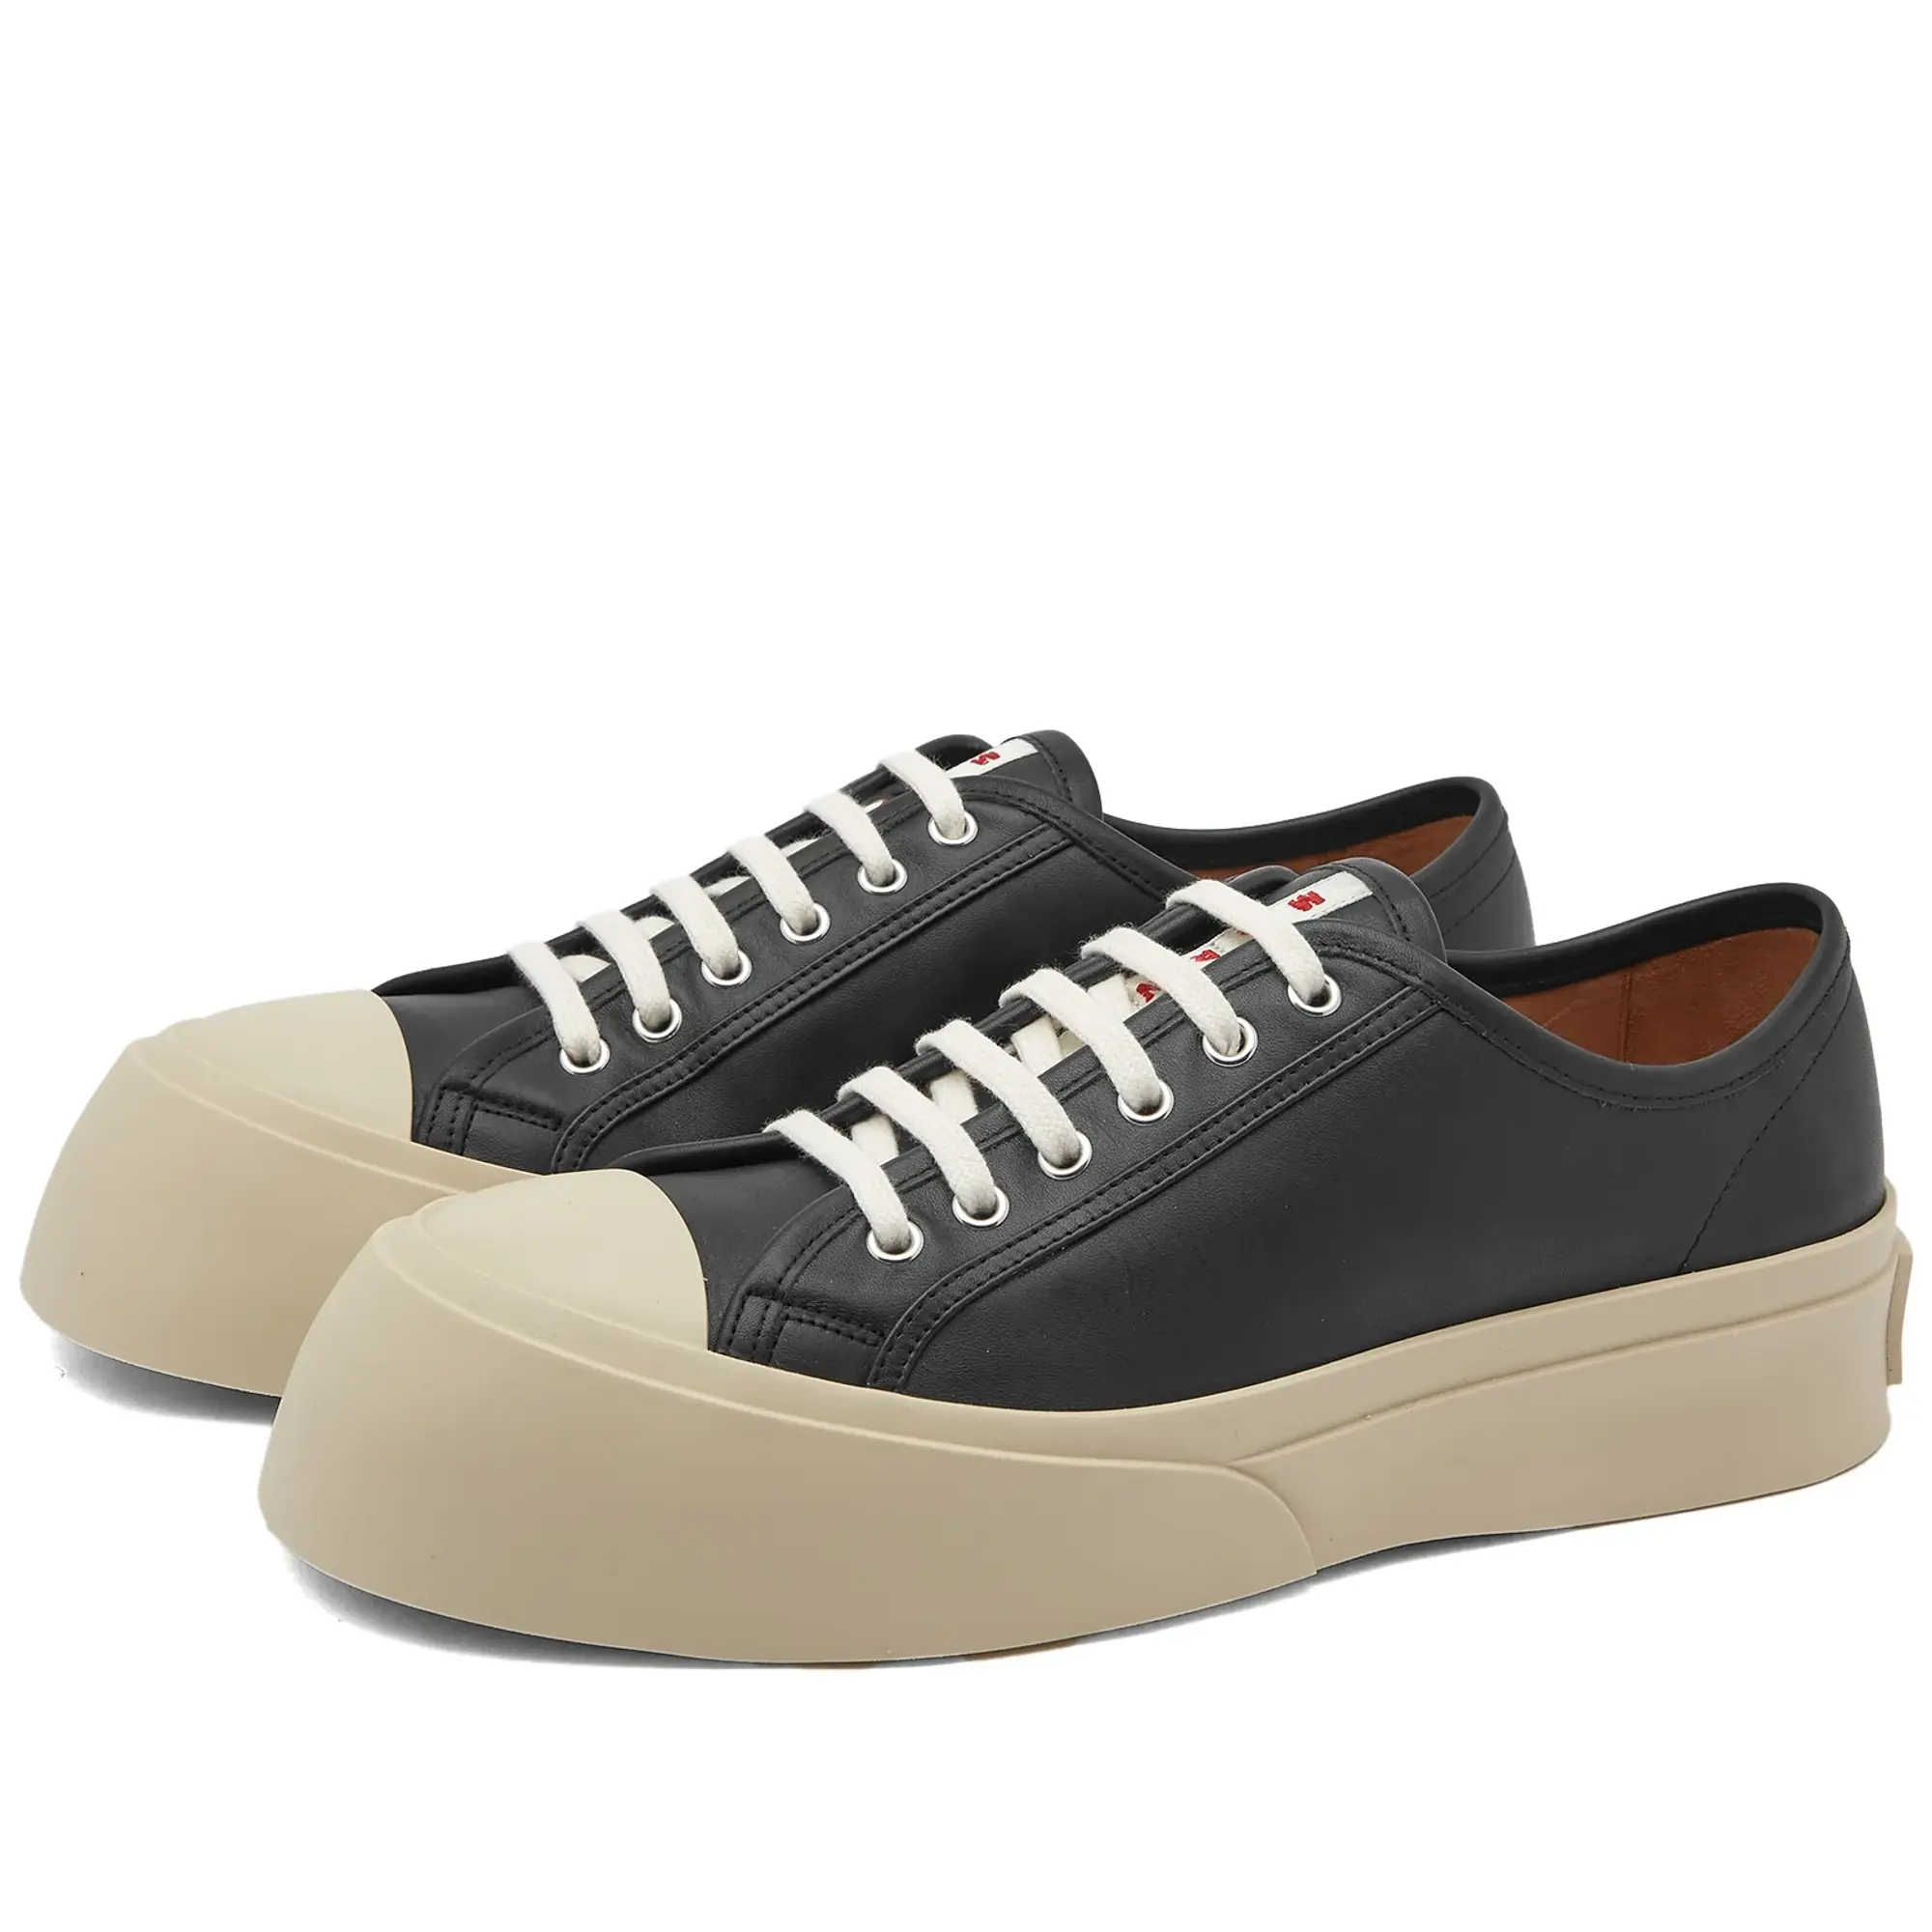 Marni Pablo Sneakers Black | SNZU002002-P2722-00N99 | FOOTY.COM